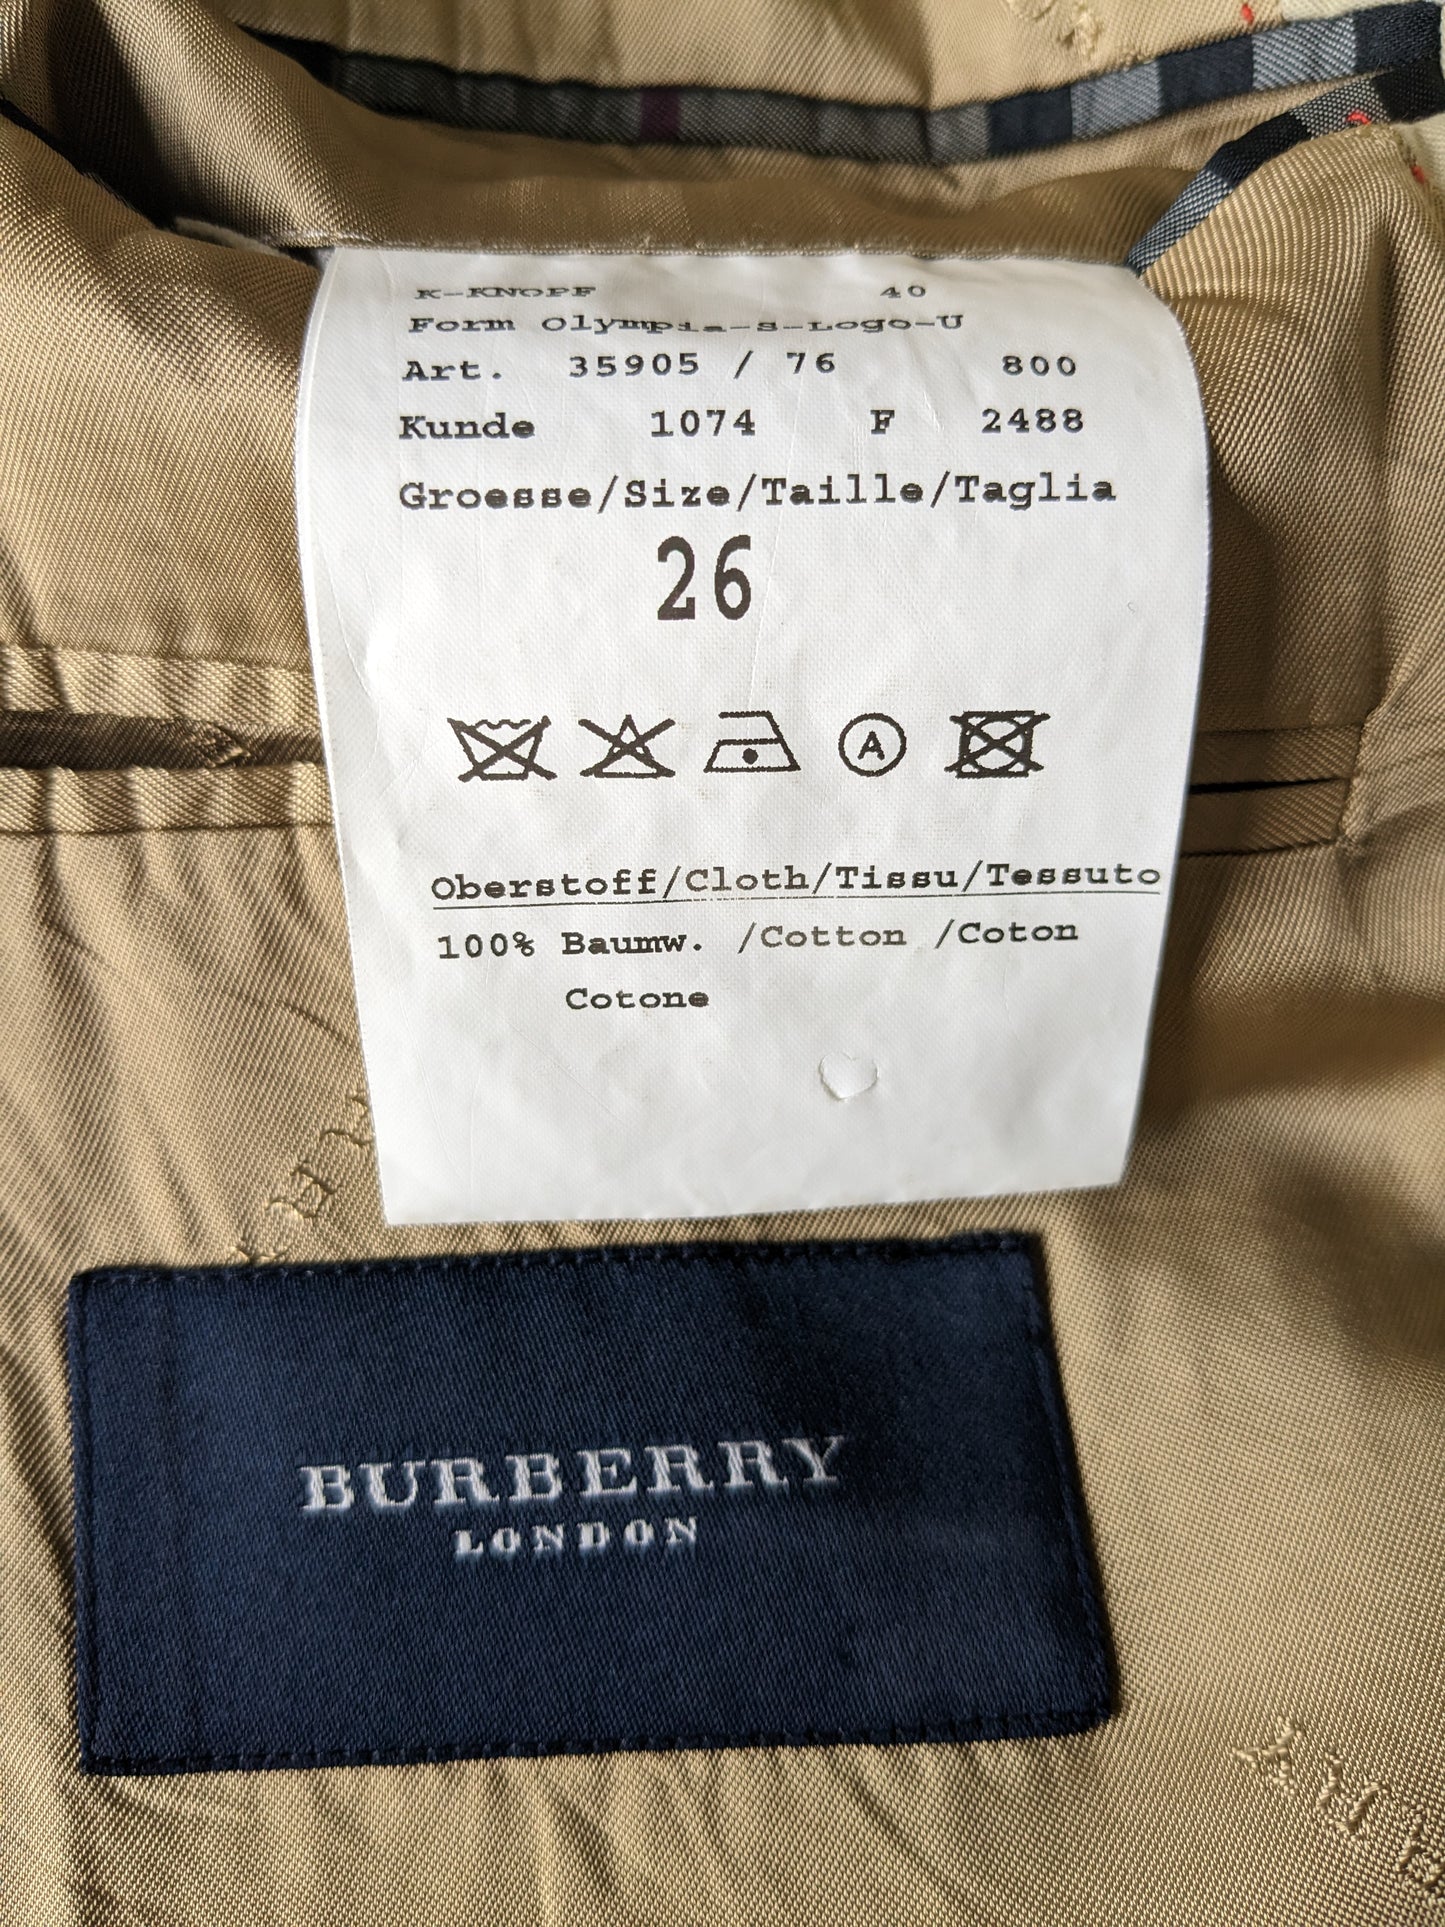 Burberry London Baumwolljacke. Beige gefärbt. Größe 26 (52 / l)